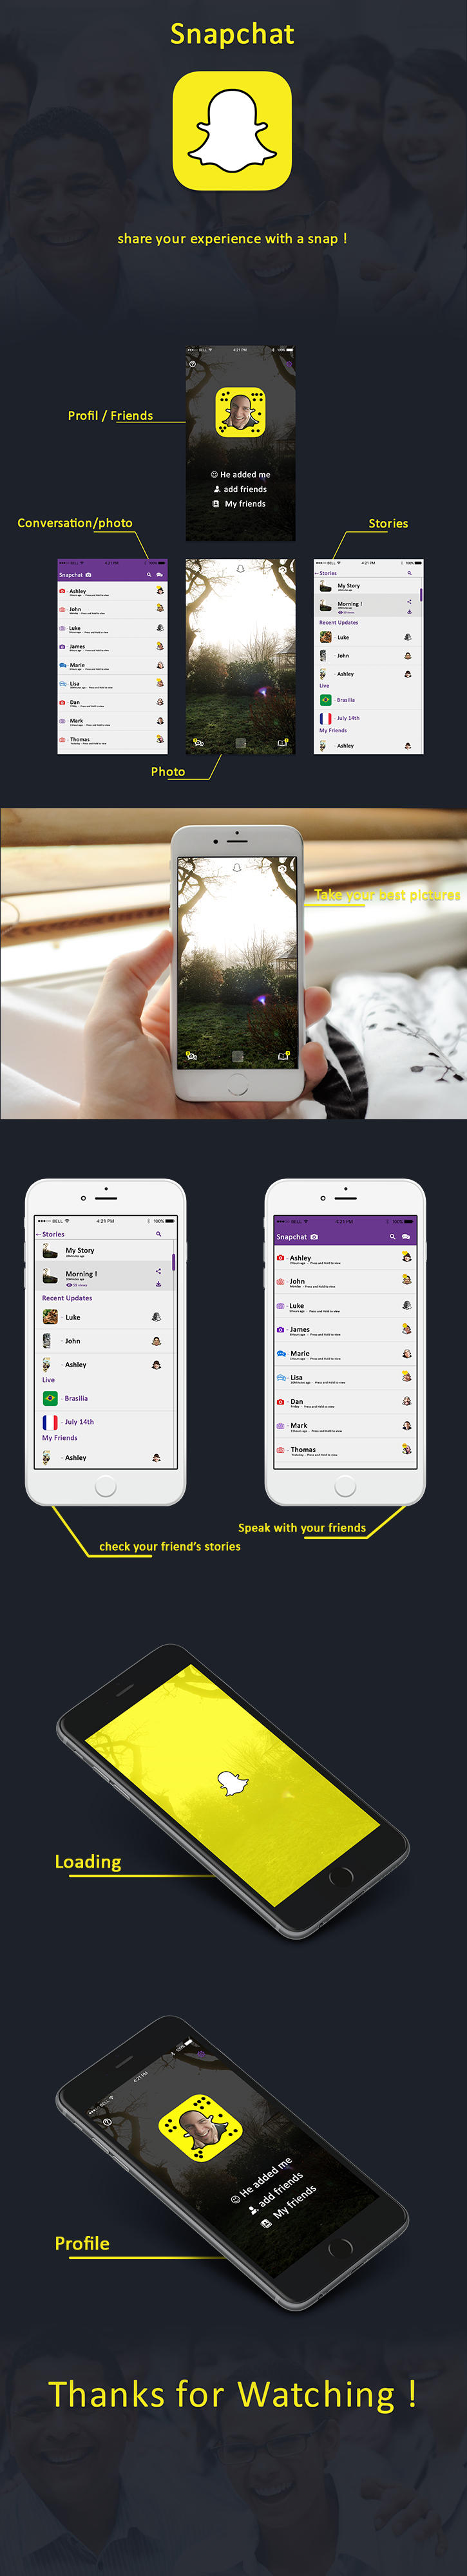 design snapchat mobile iphone Mockup re design re-design app